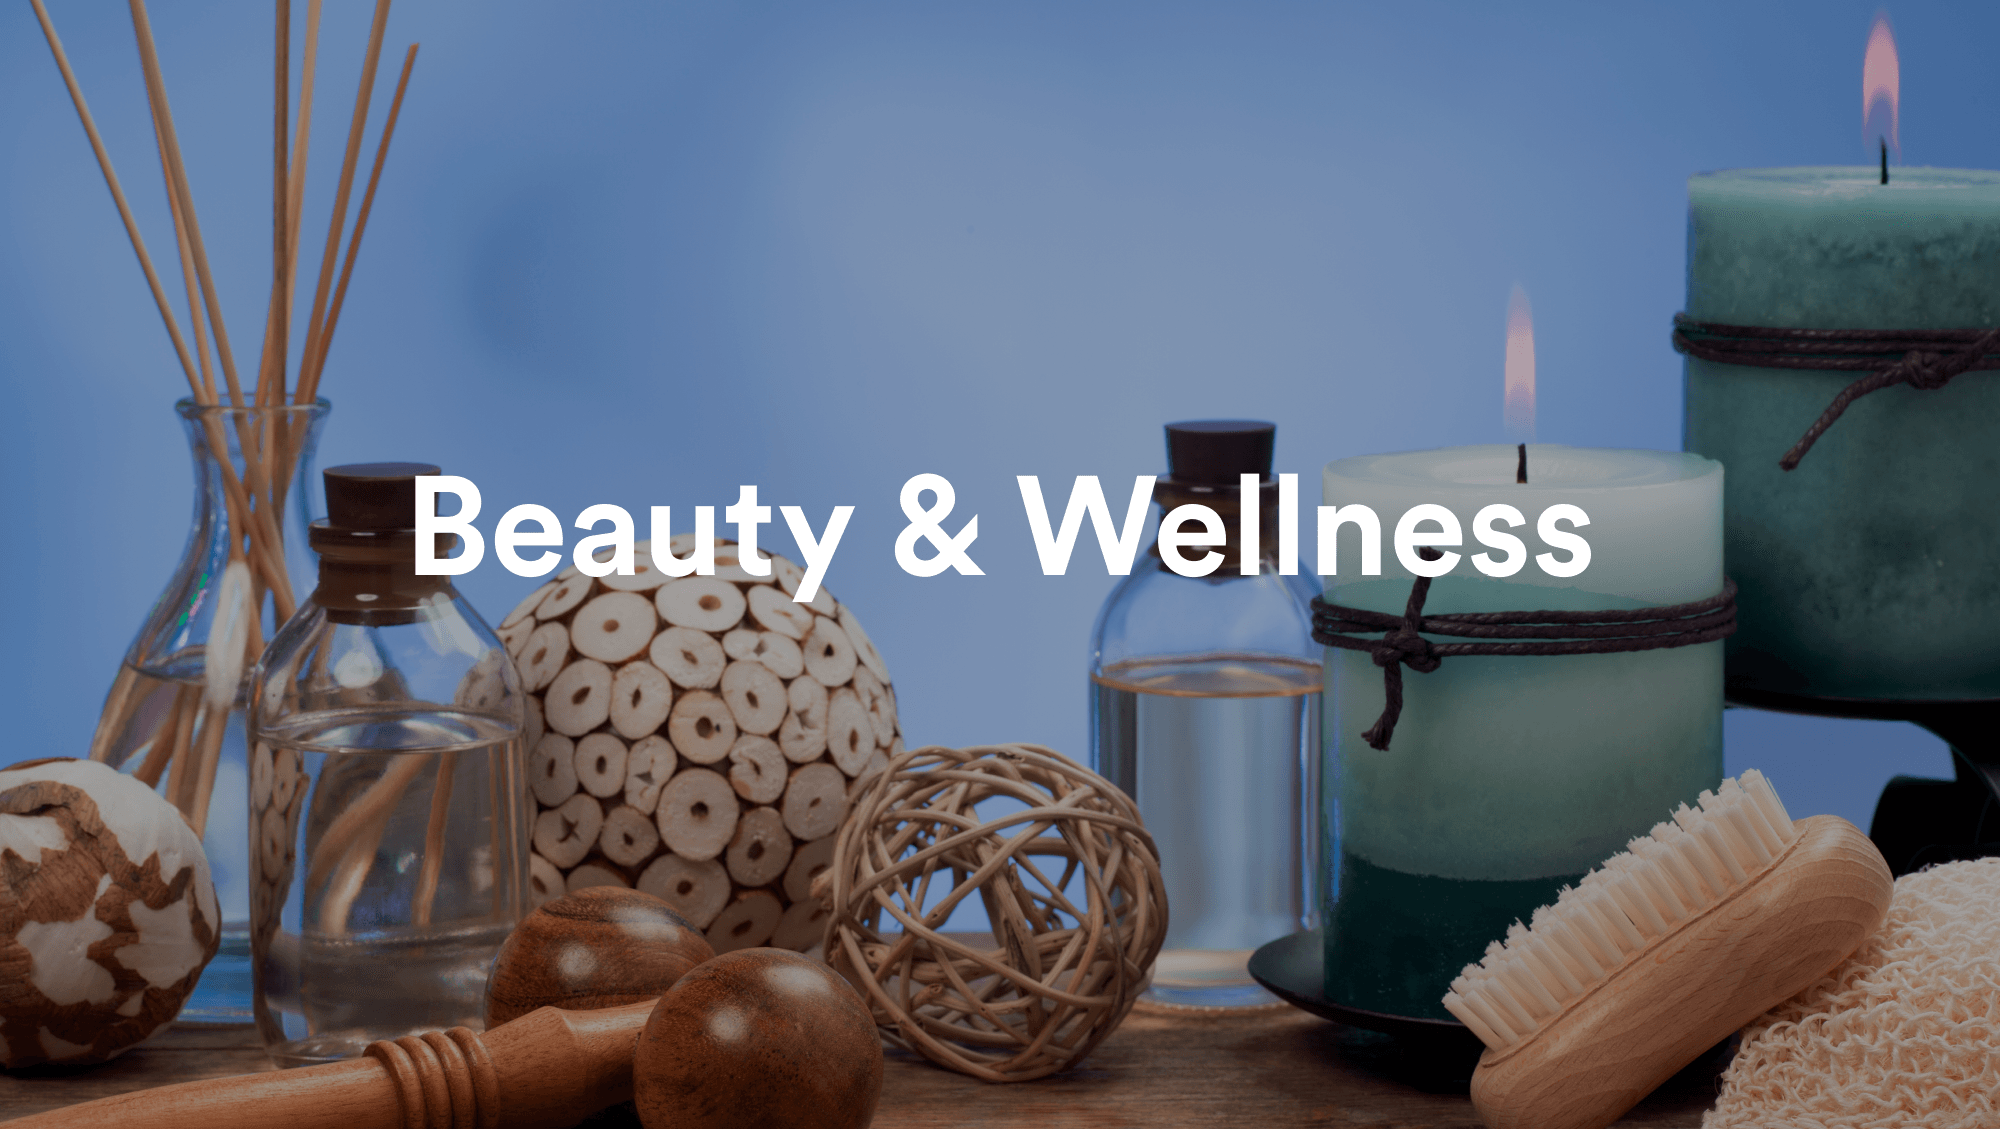 Beauty & Wellness - Shop Categories.png